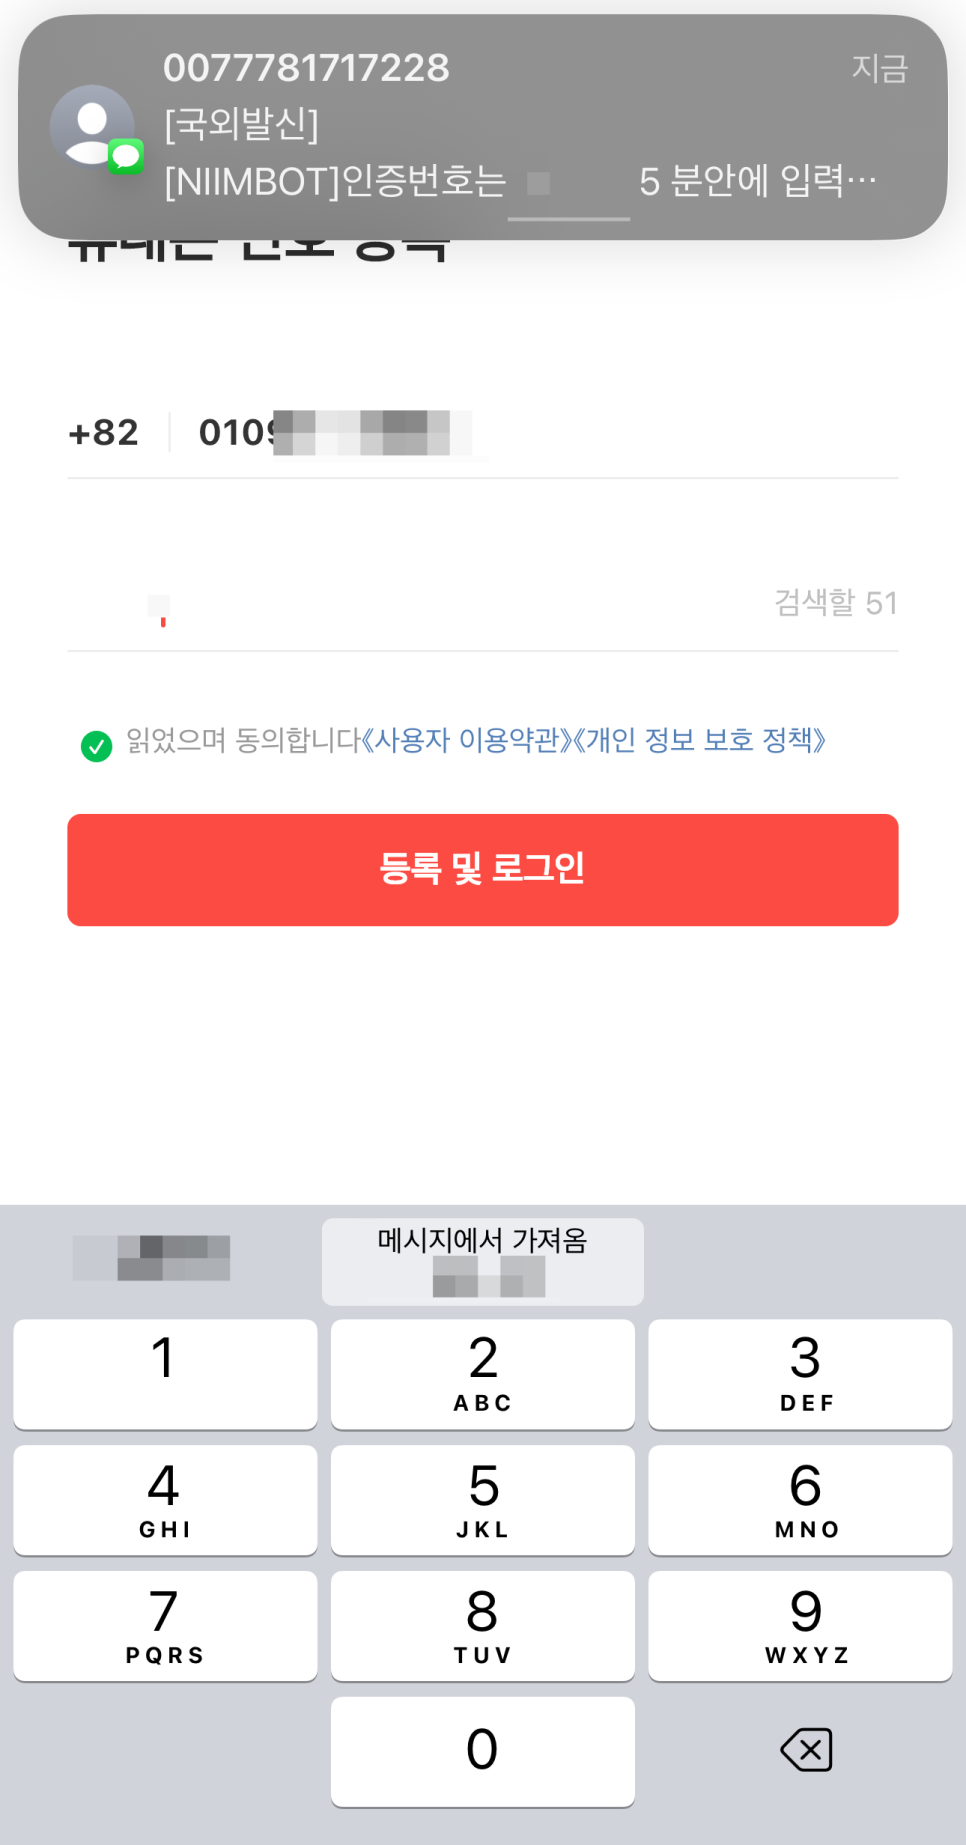 라벨프린터 님봇 D110  12,000원 직구후기 + 어플로 작동 feat. 알리익스프레스 14주년 세일 ~!